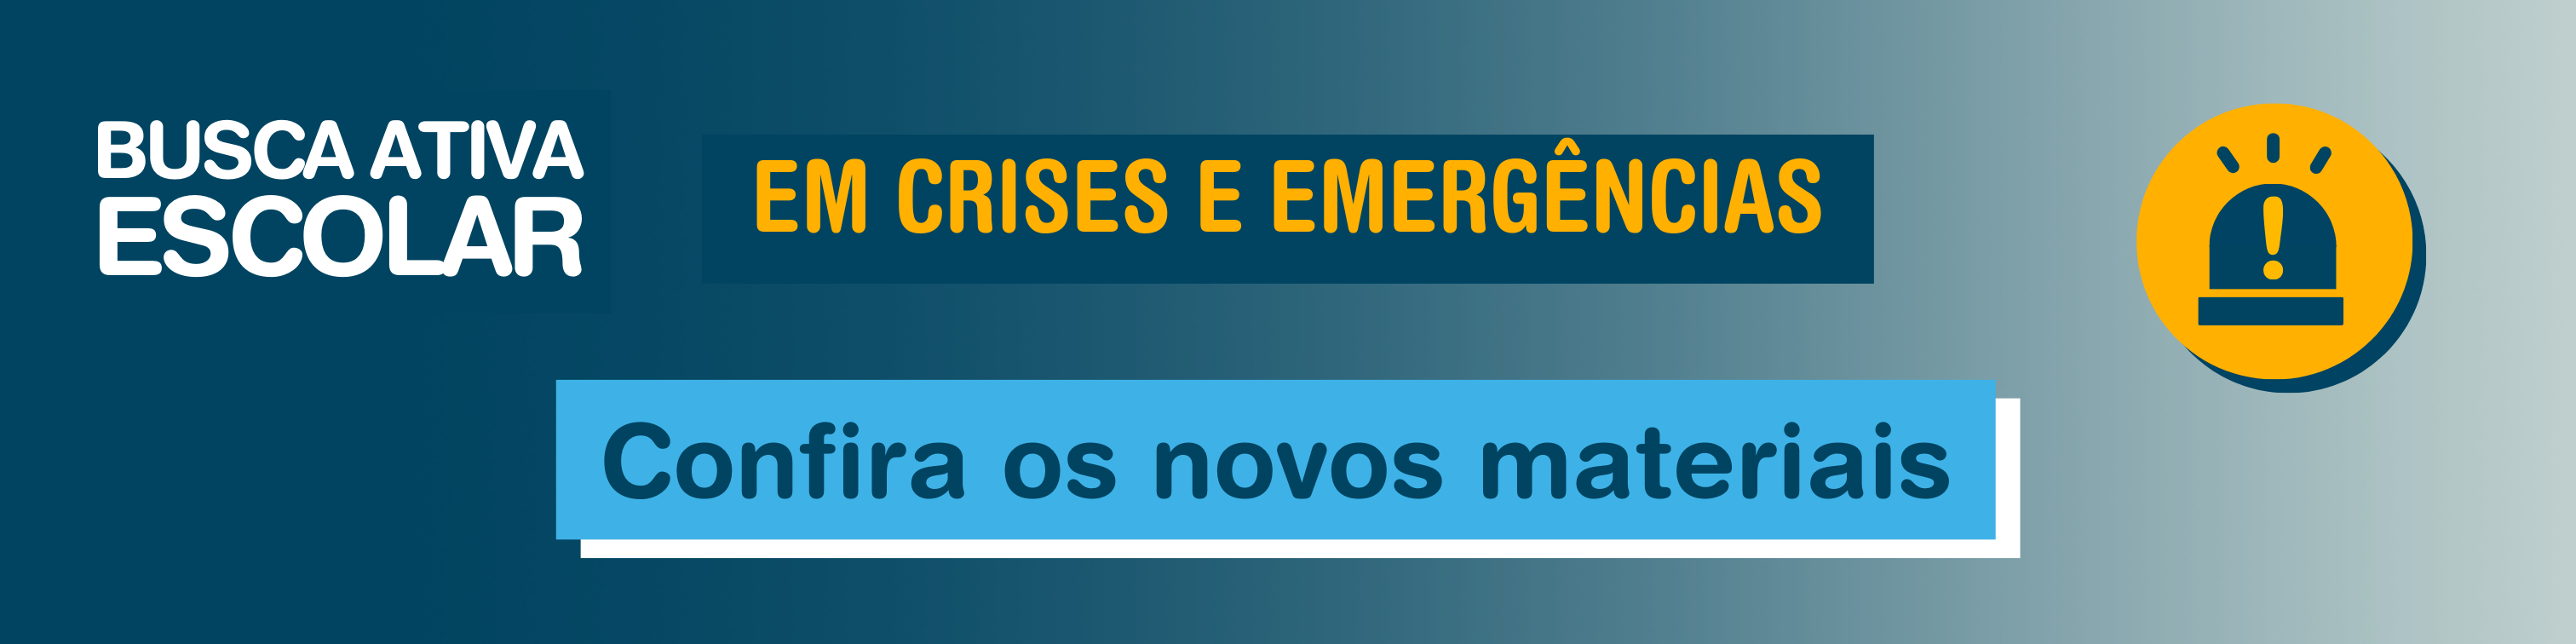 Crises e emergencias